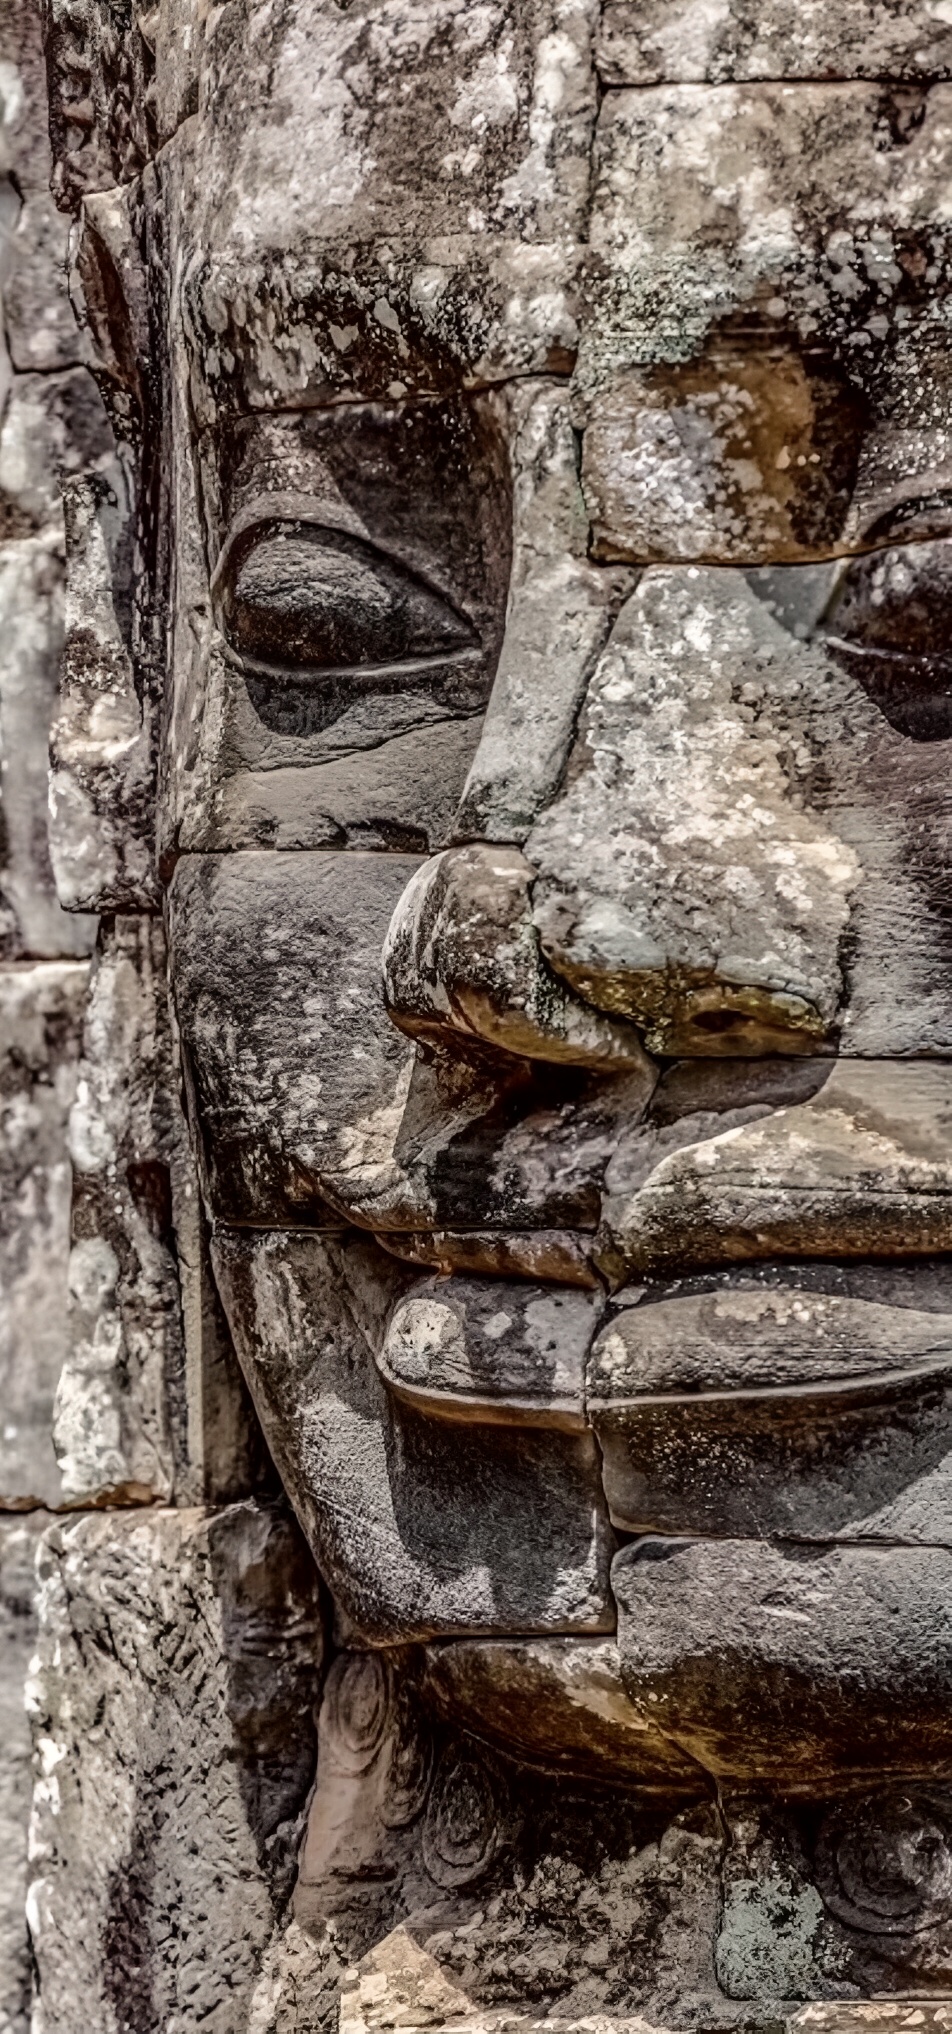 令吴哥窟蜚声世界的“高棉的微笑” 这里有49座四面佛雕像，代表着佛经中的“慈、悲、喜、舍”！据说是建